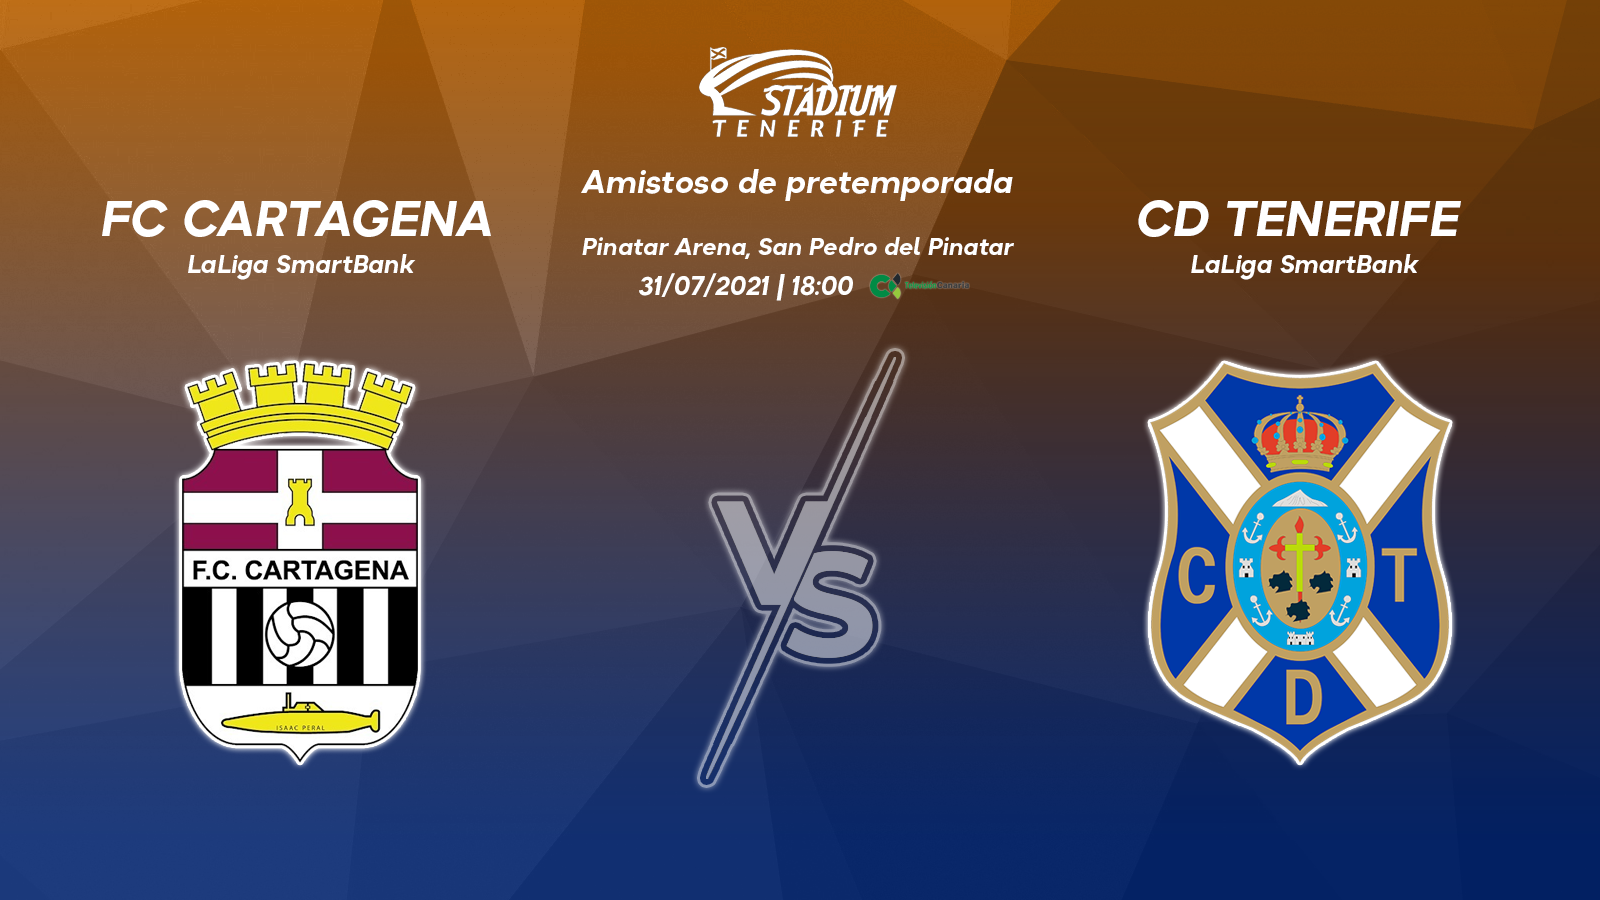 Tercer partido de pretemporada para el CD Tenerife, ante el FC Cartagena en Pinatar